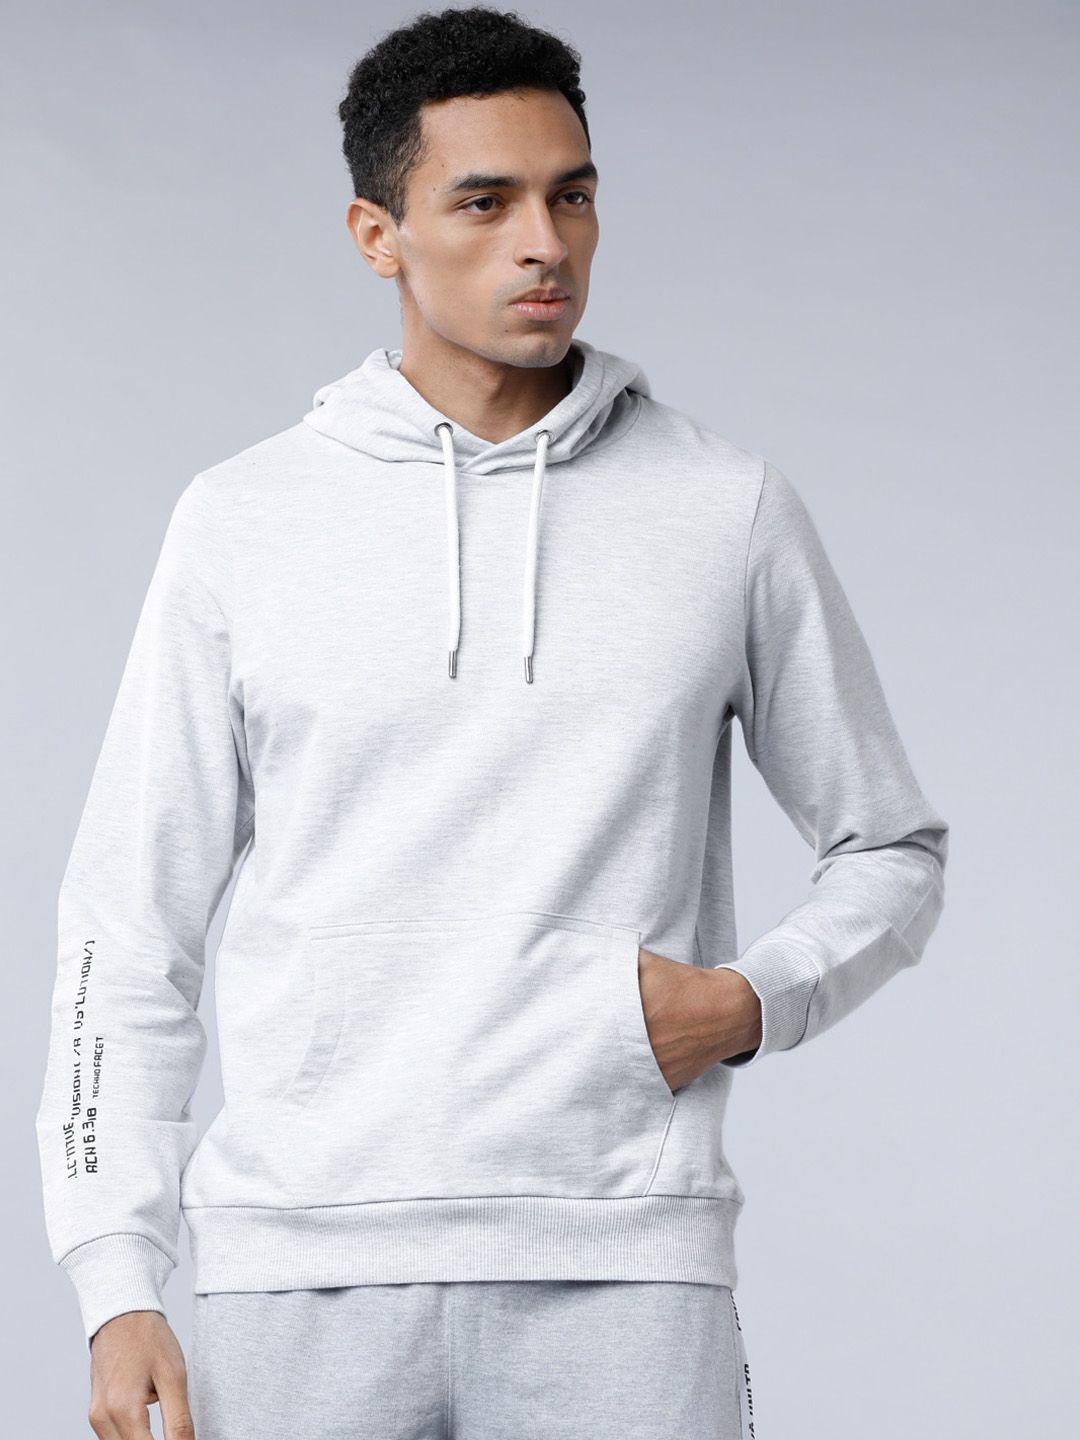 locomotive-men-grey-solid-hooded-sweatshirt